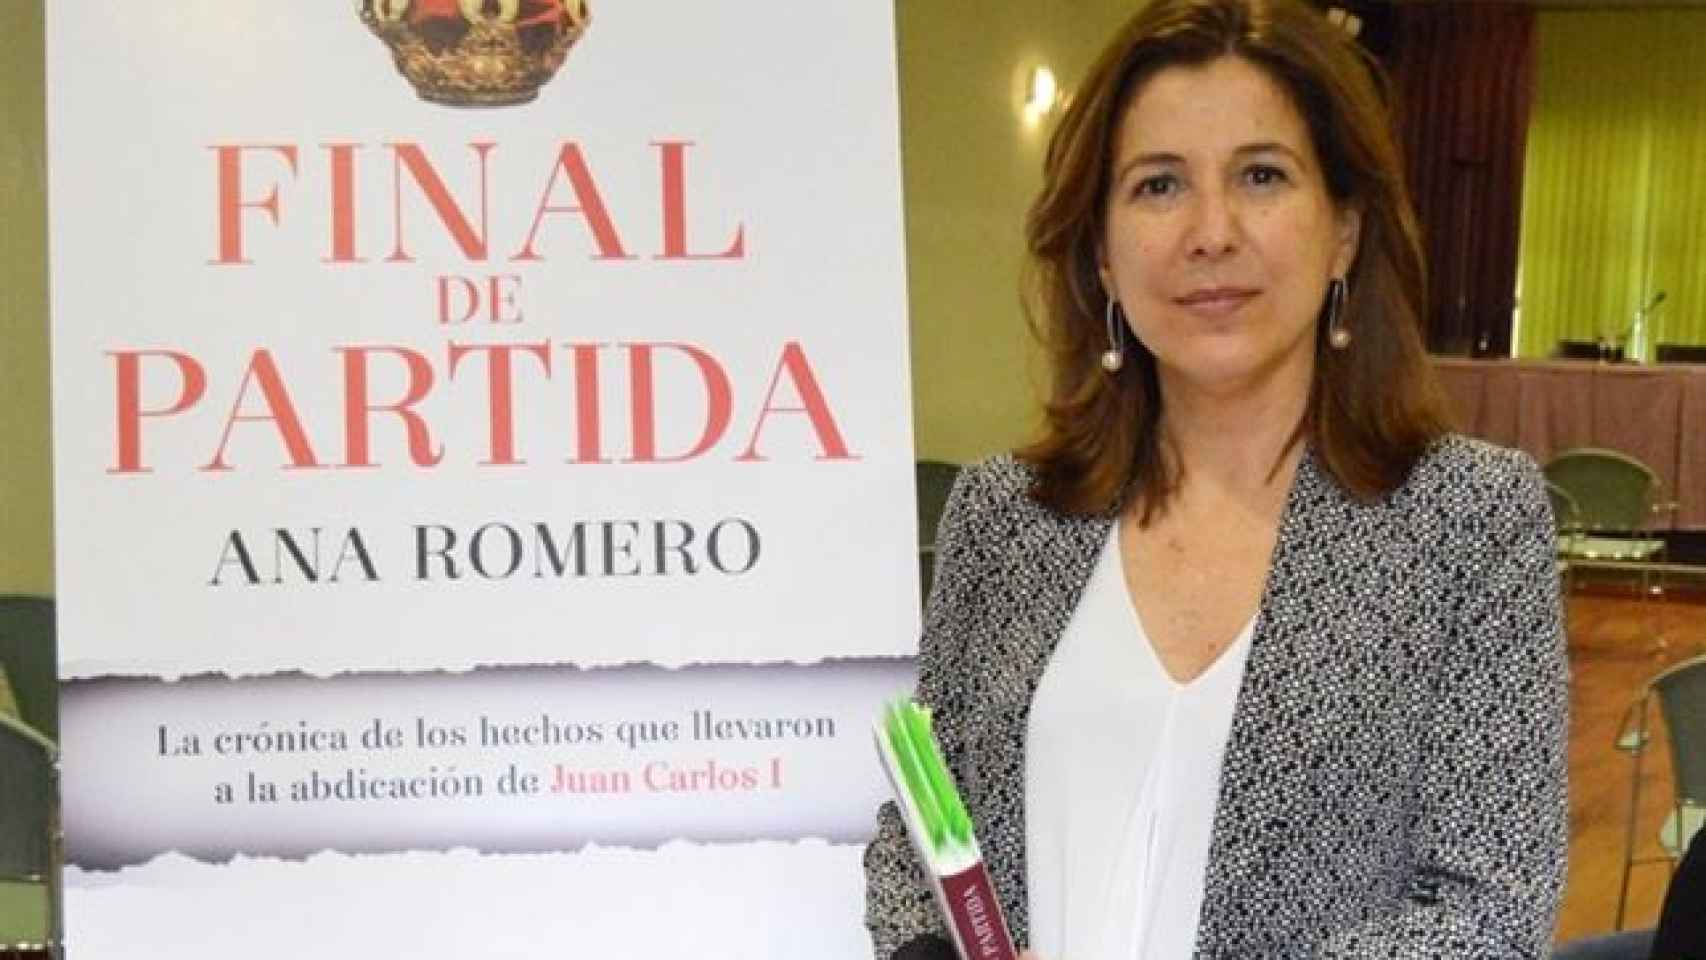 Ana Romero autora de 'Final de Partida' (Esfera de los Libros)